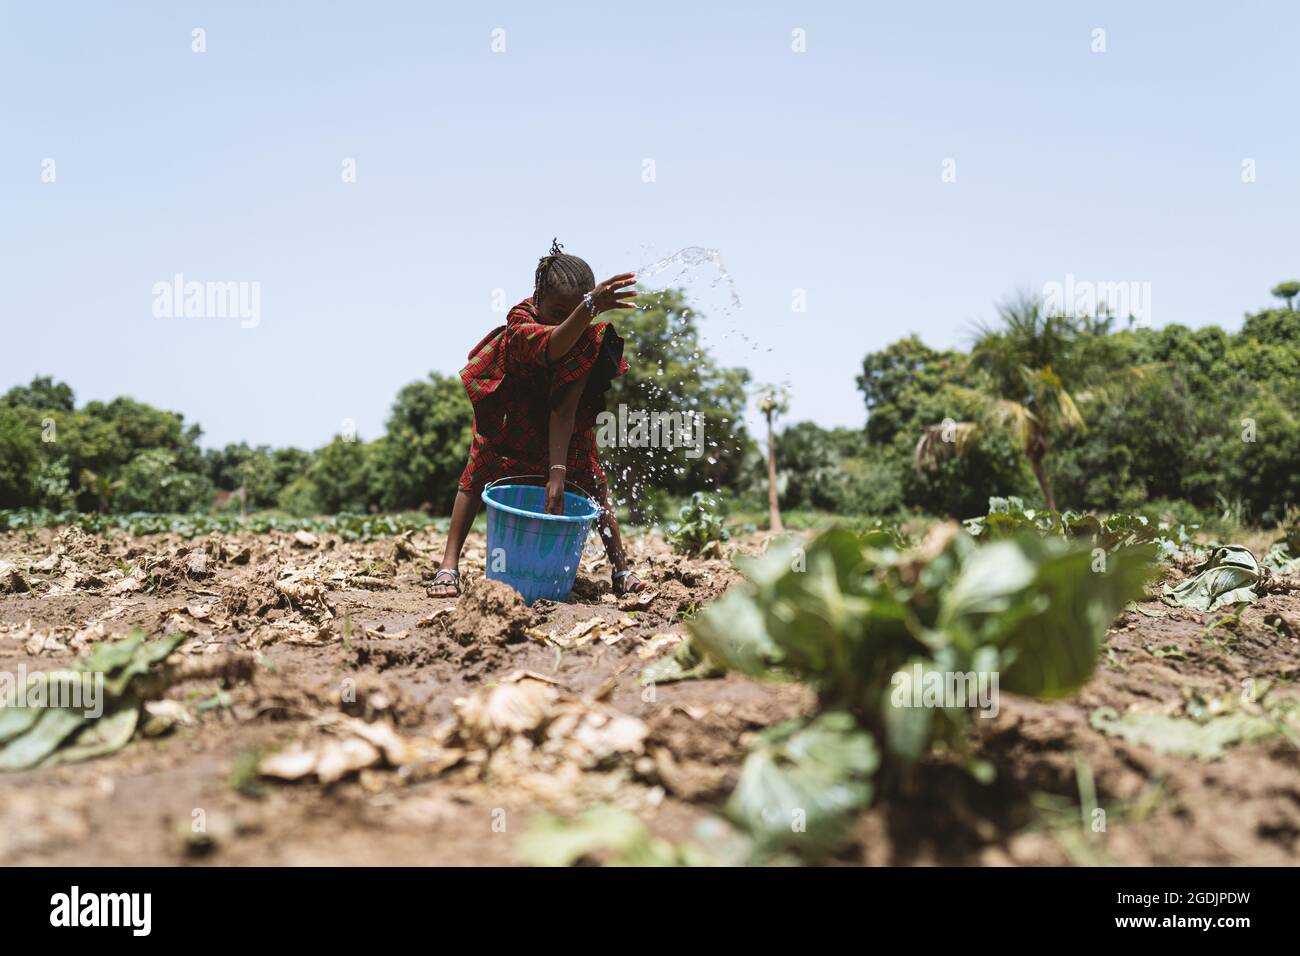 Auf diesem Bild spritzt ein kleines afrikanisches Mädchen von Hand Wasser auf trockene Kohlpflanzen unter einem wolkenlosen blu-Himmel Stockfoto